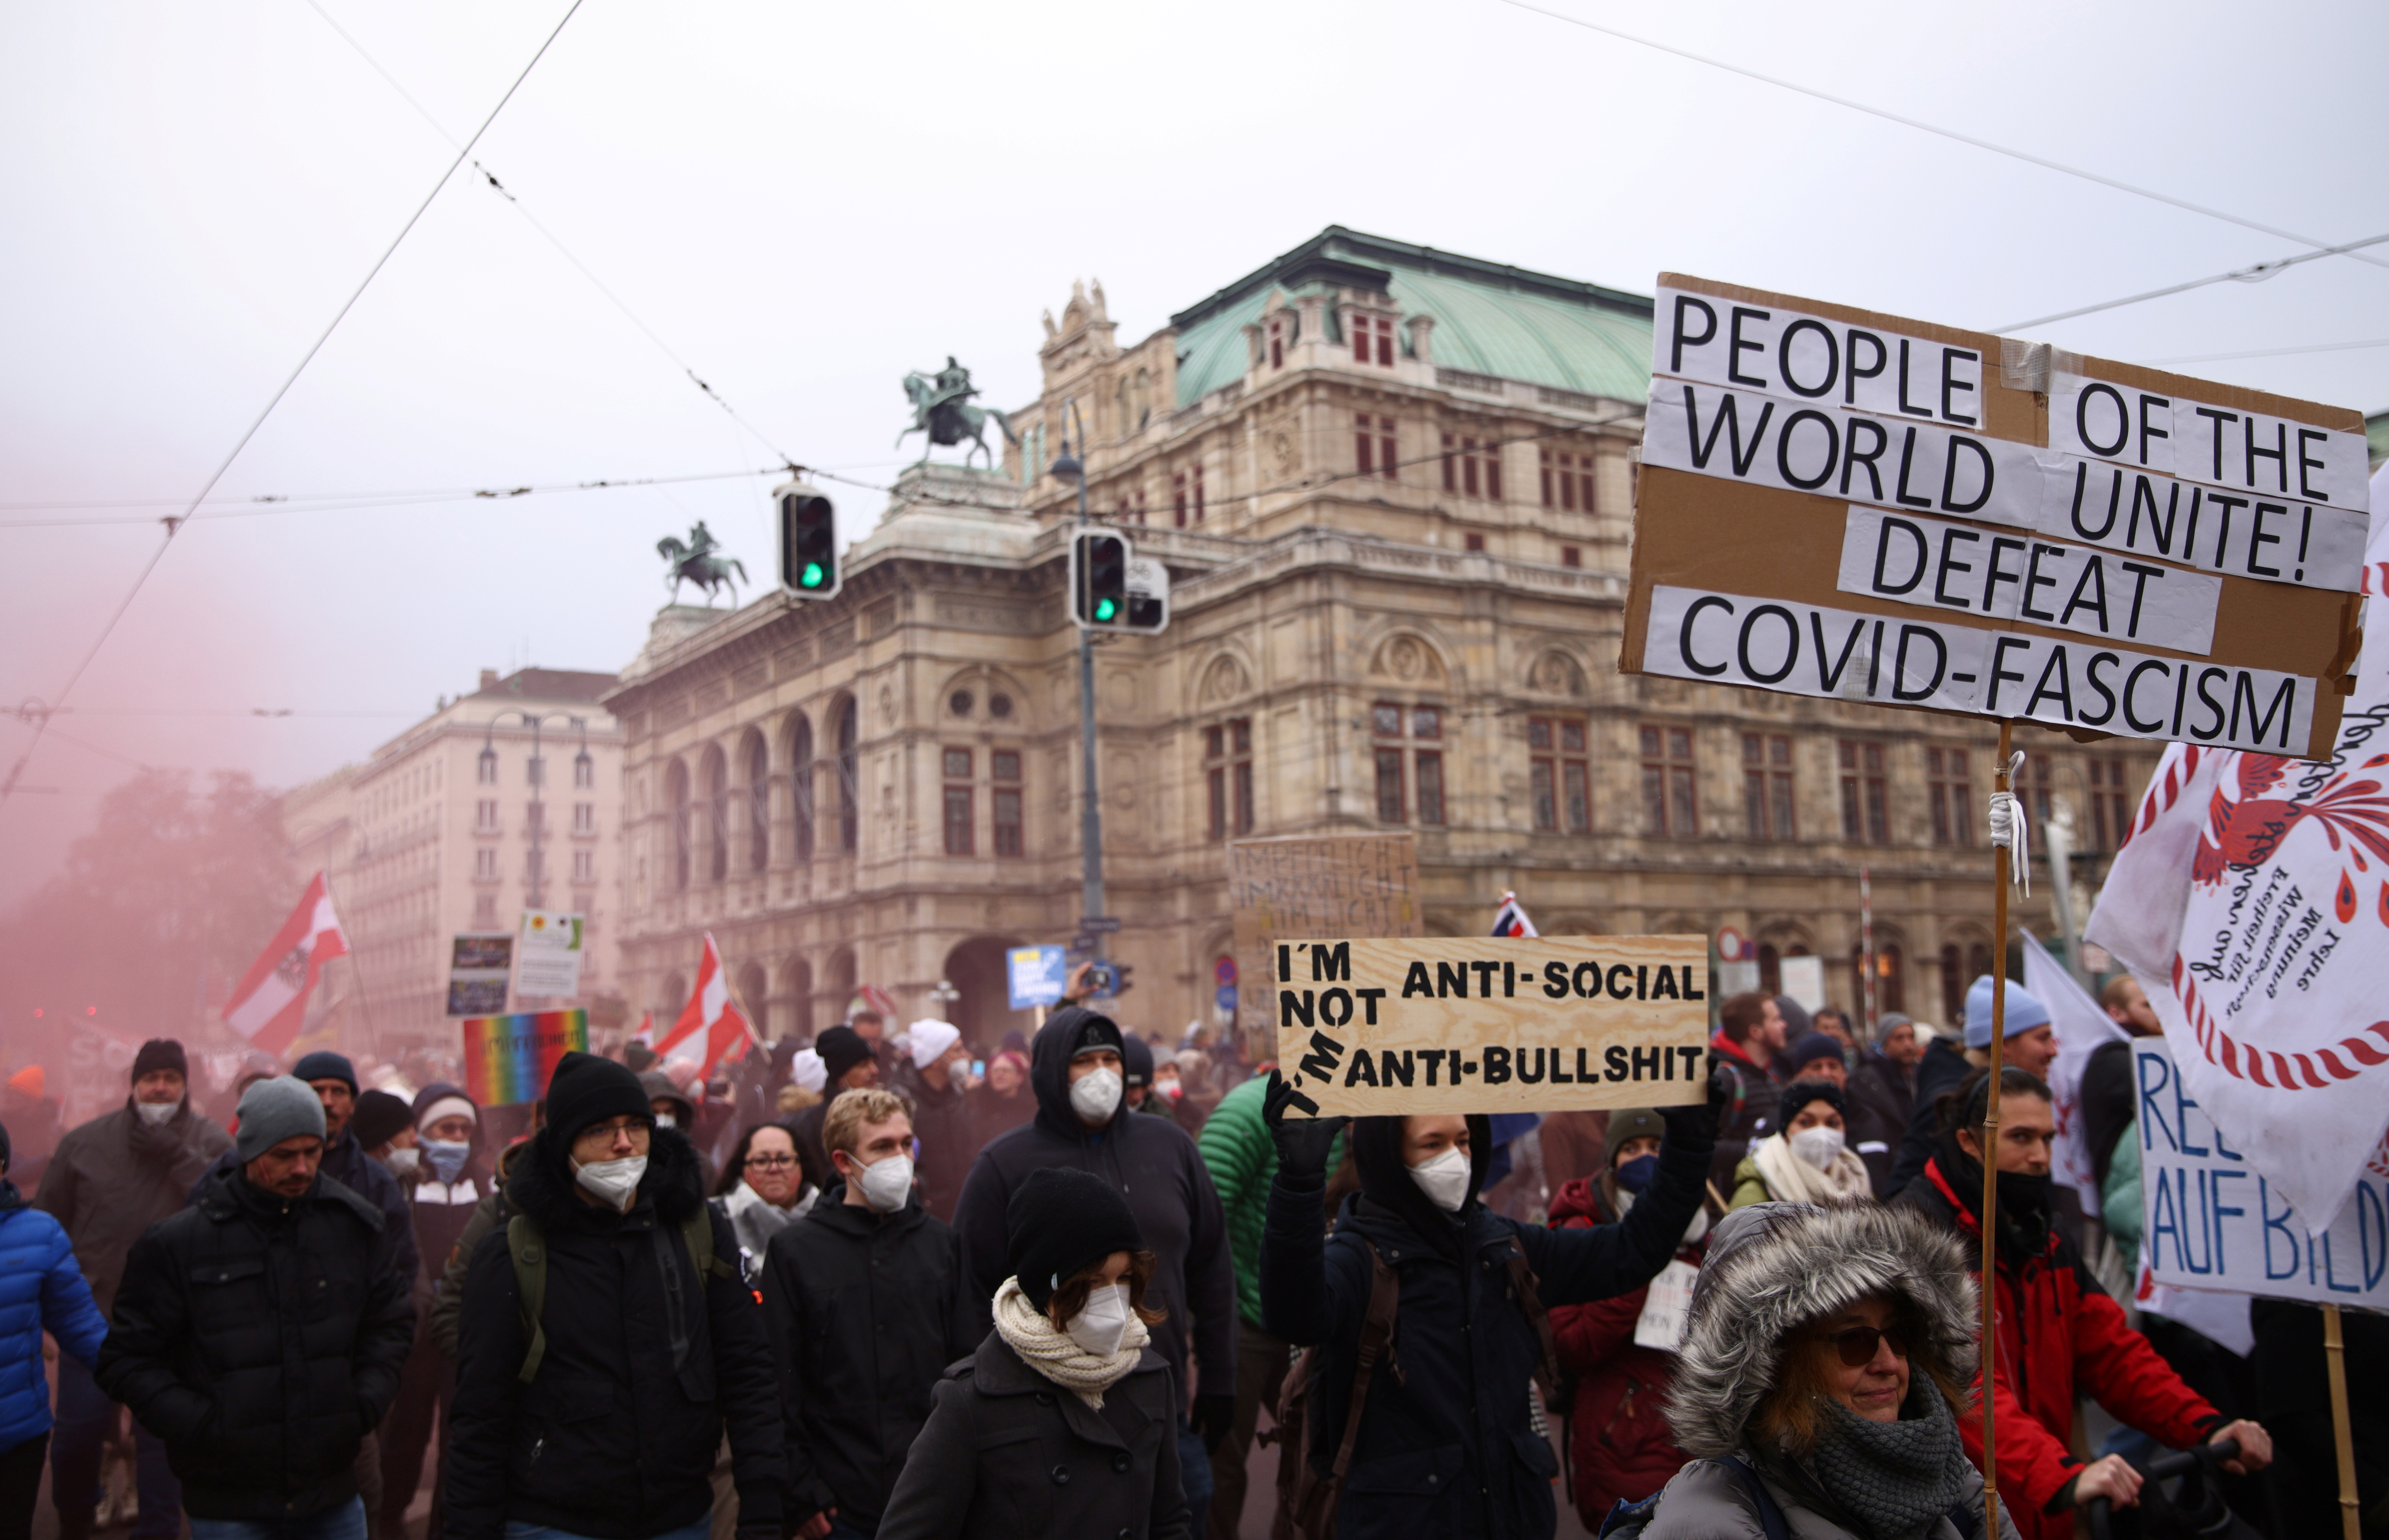 Els manifestants sostenen banderes i pancartes mentre marxen davant de l'Òpera Estatal per protestar contra les restriccions de la malaltia del coronavirus (COVID-19) i la vacunació obligatòria a Viena, Àustria, 4 de desembre de 2021. REUTERS/Lisi Niesner